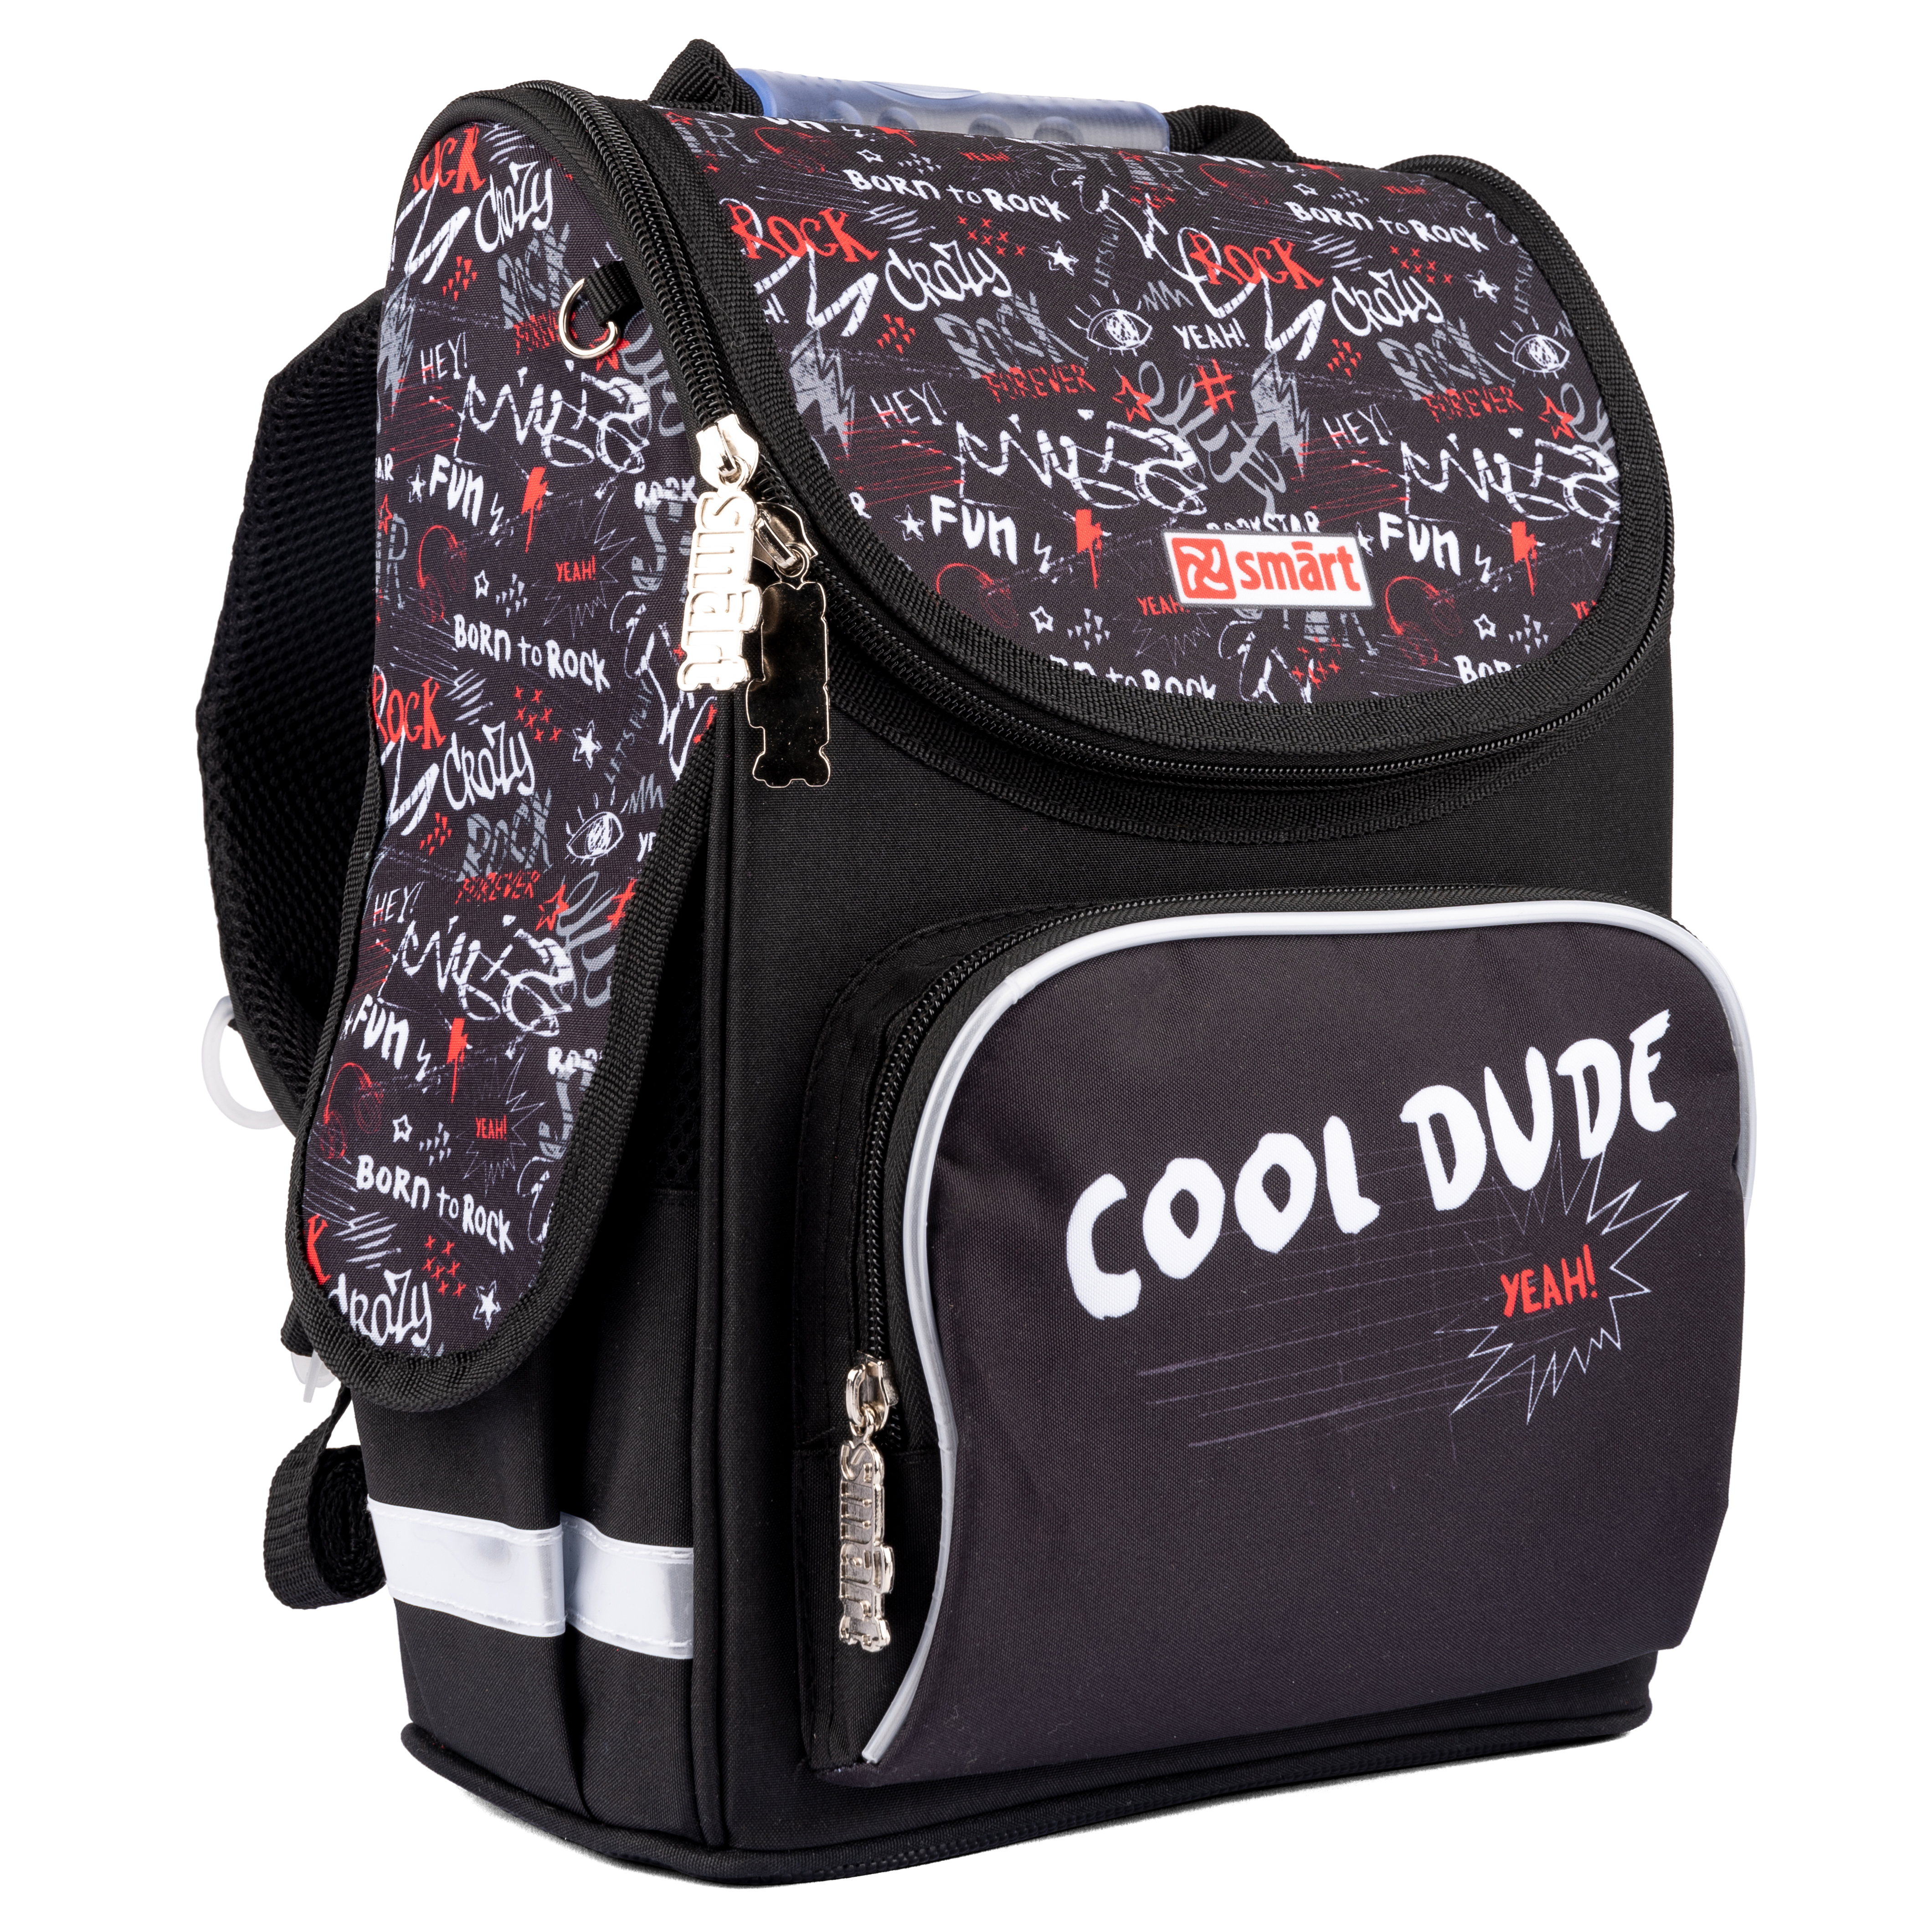 Рюкзак школьный каркасный Smart PG-11 Dude (559013)